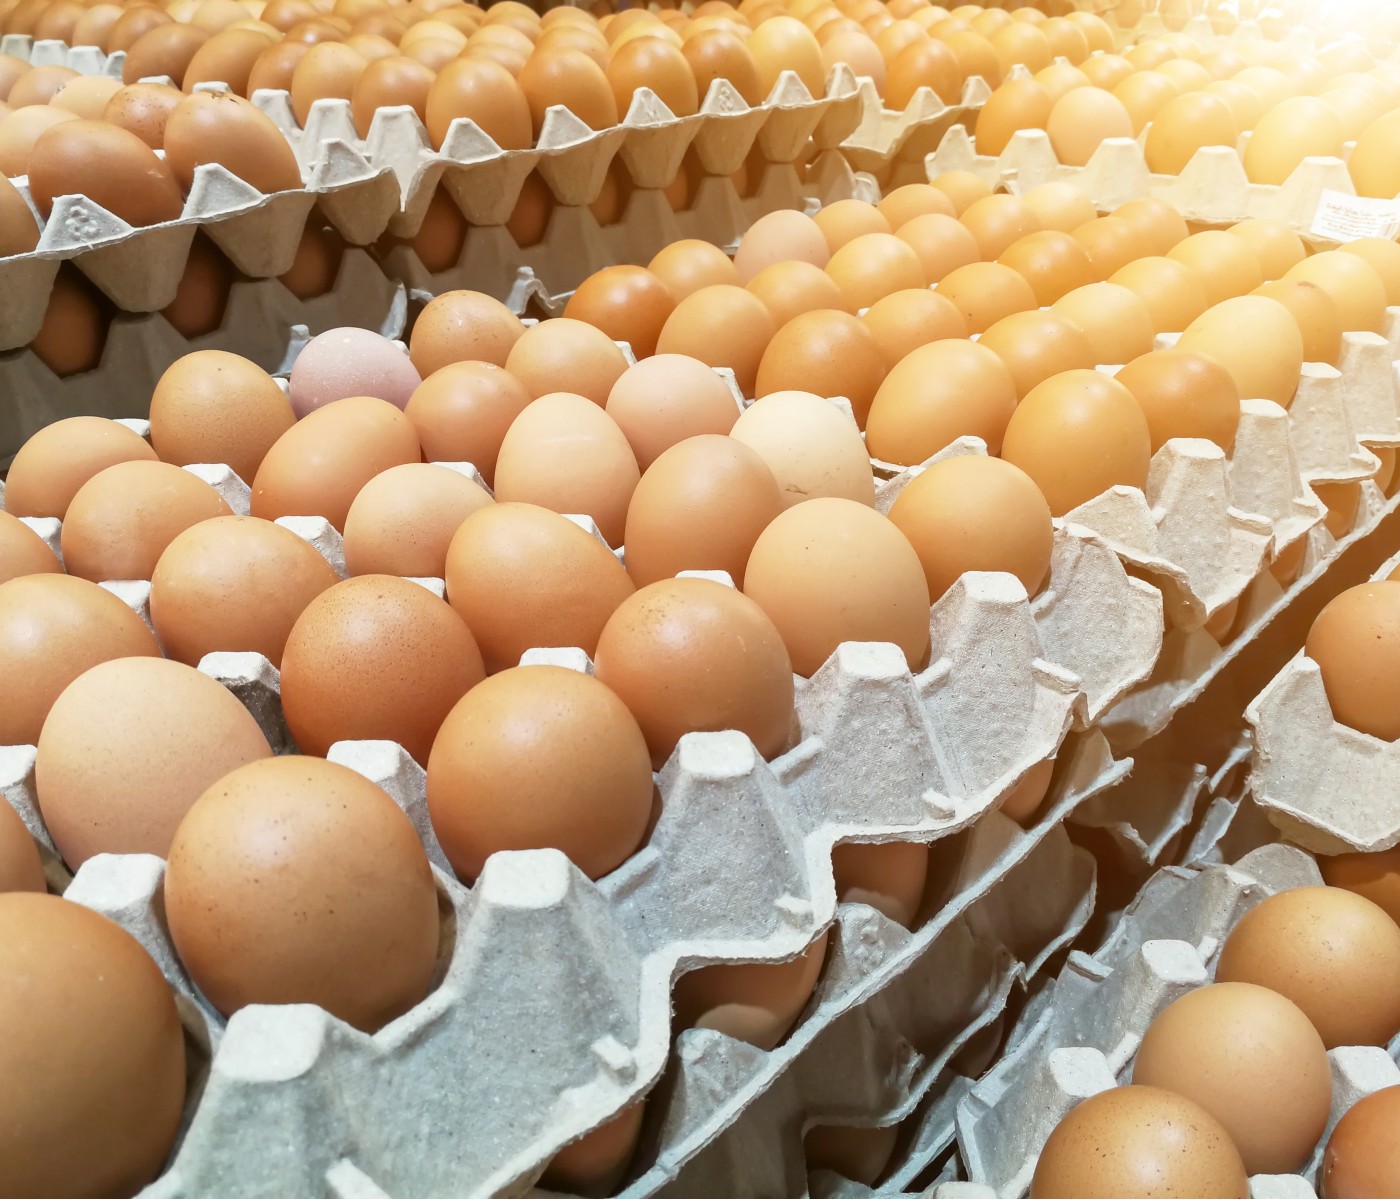 Avicultores bolivianos informan posible desabastecimiento de productos avícolas